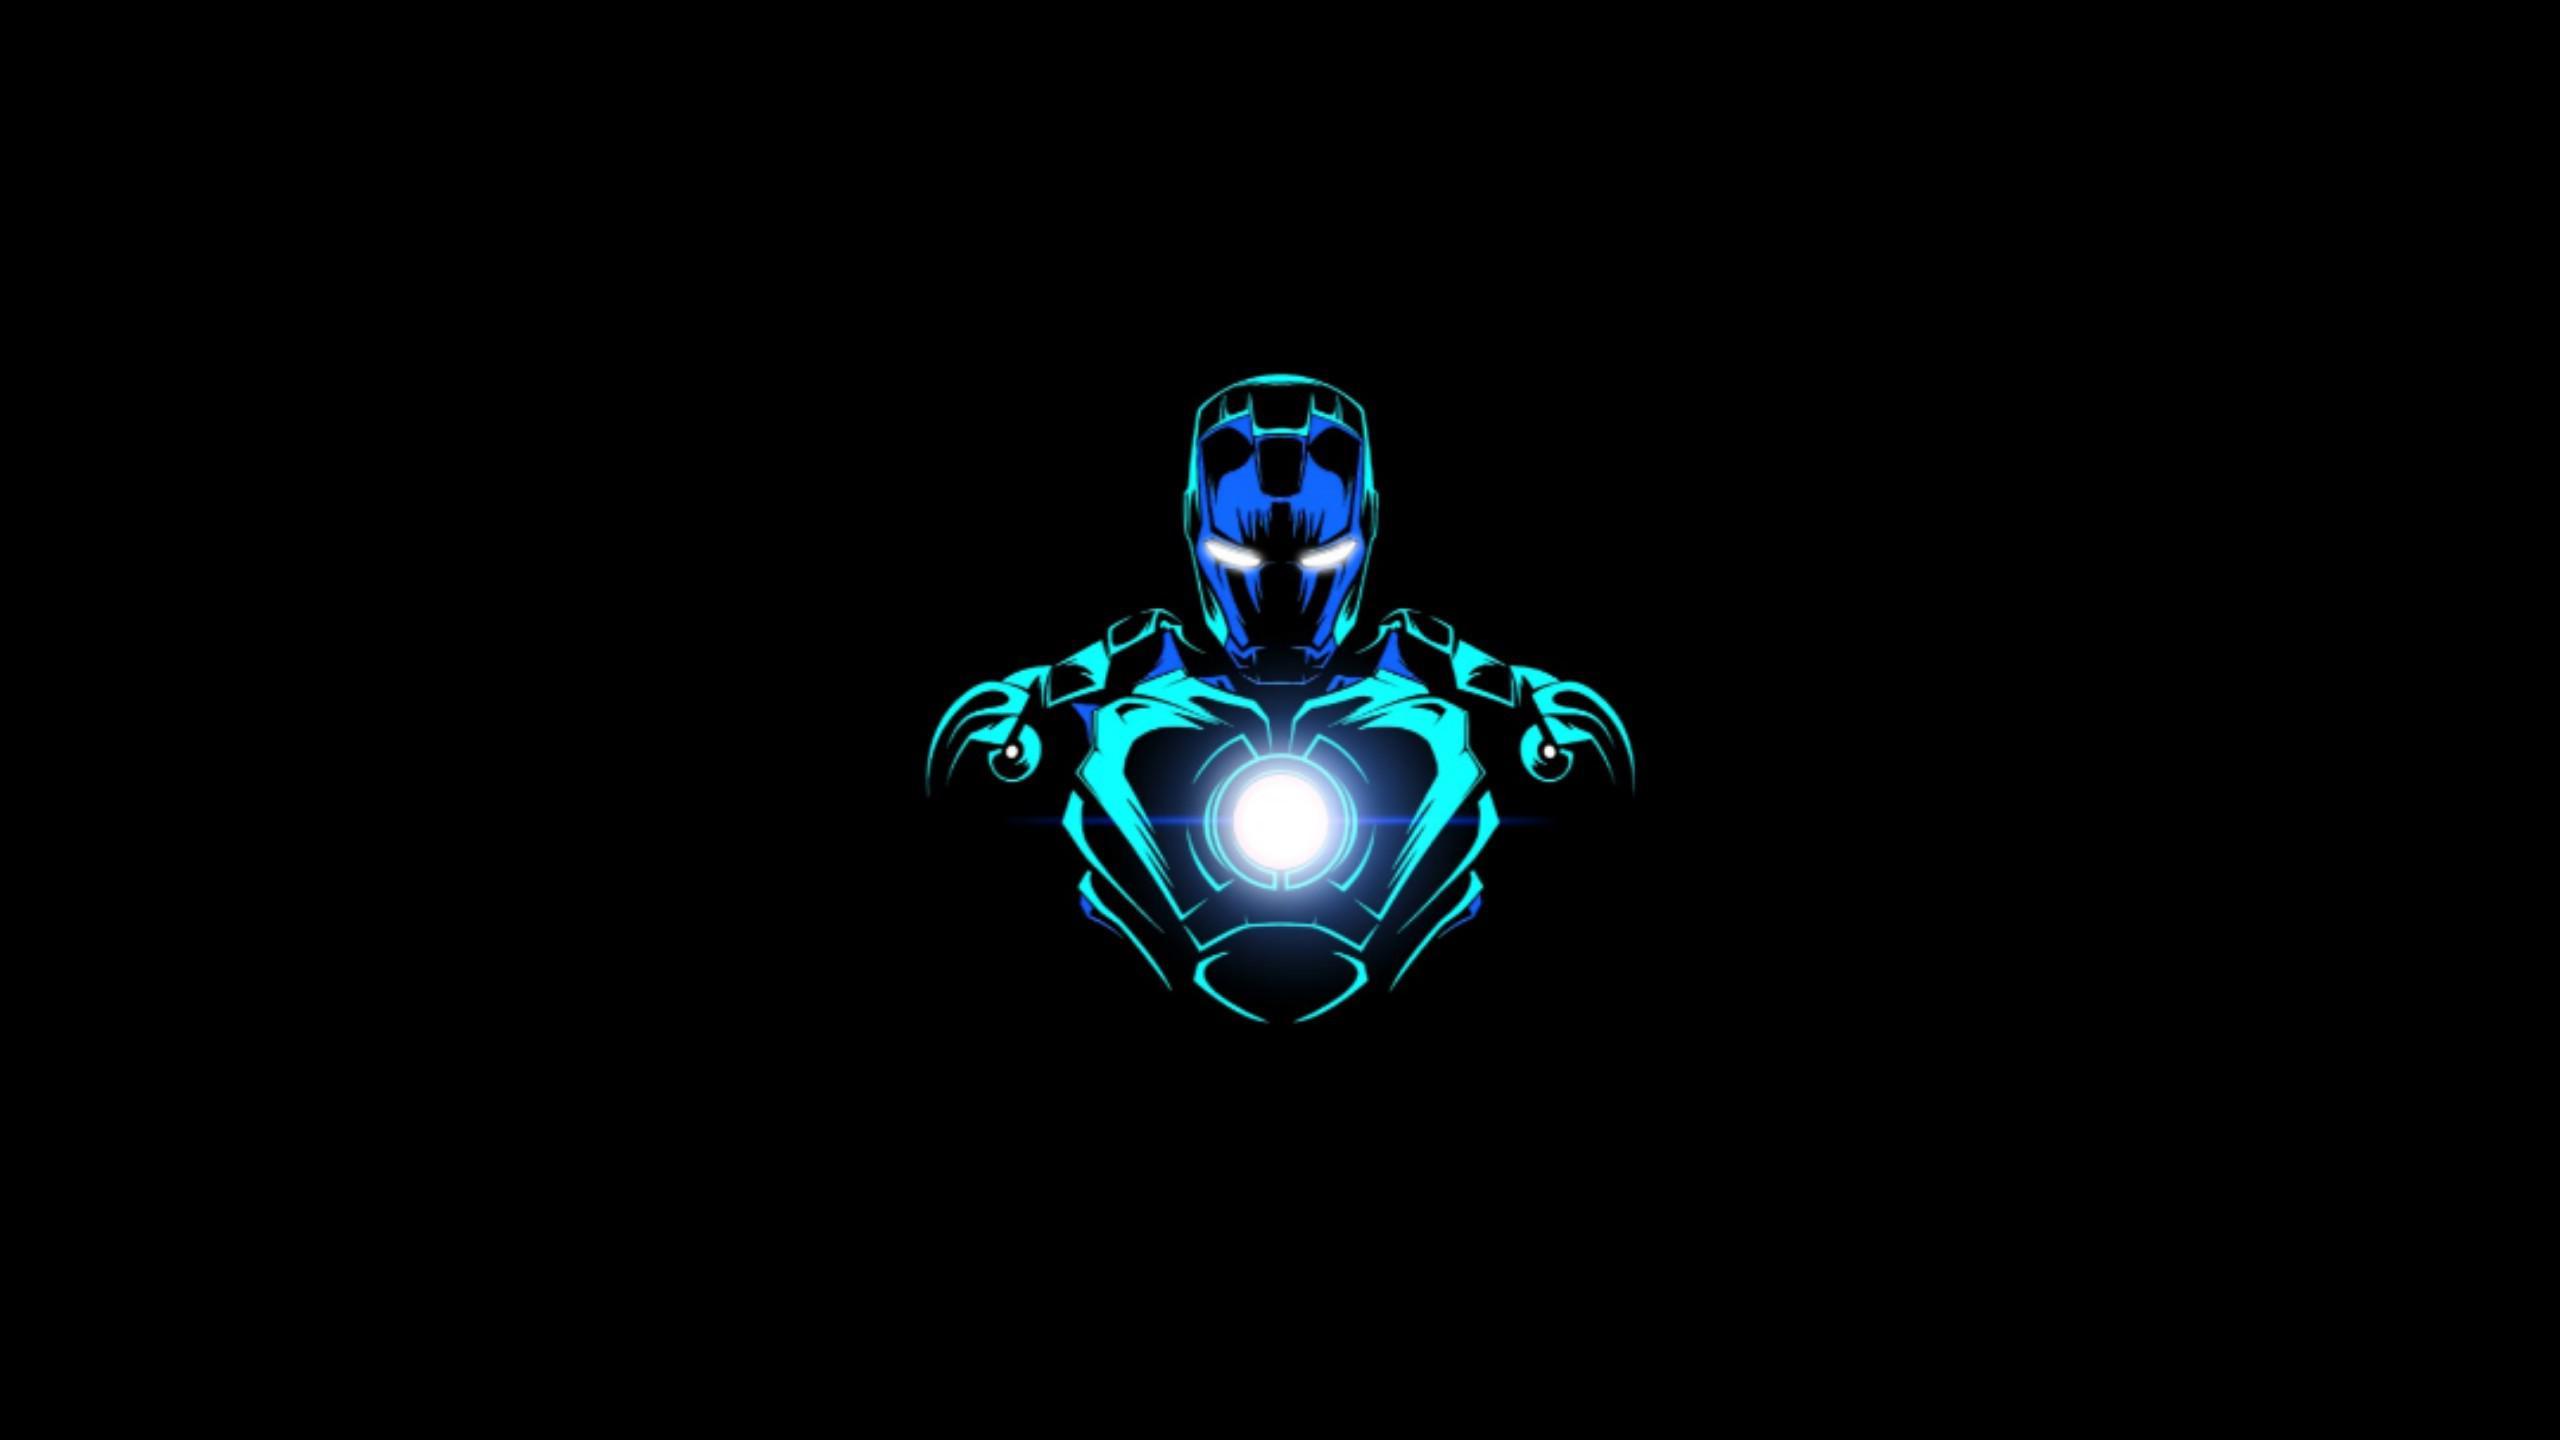 Blue Iron Man - một phiên bản khác của người sắt với sức mạnh bất diệt. Hình ảnh của Blue Iron Man sẽ khiến bạn bất ngờ với vẻ ngoài mới lạ và mang tính biểu tượng. Hãy xem những hình ảnh này để cảm nhận được sức hấp dẫn của siêu anh hùng Marvel.